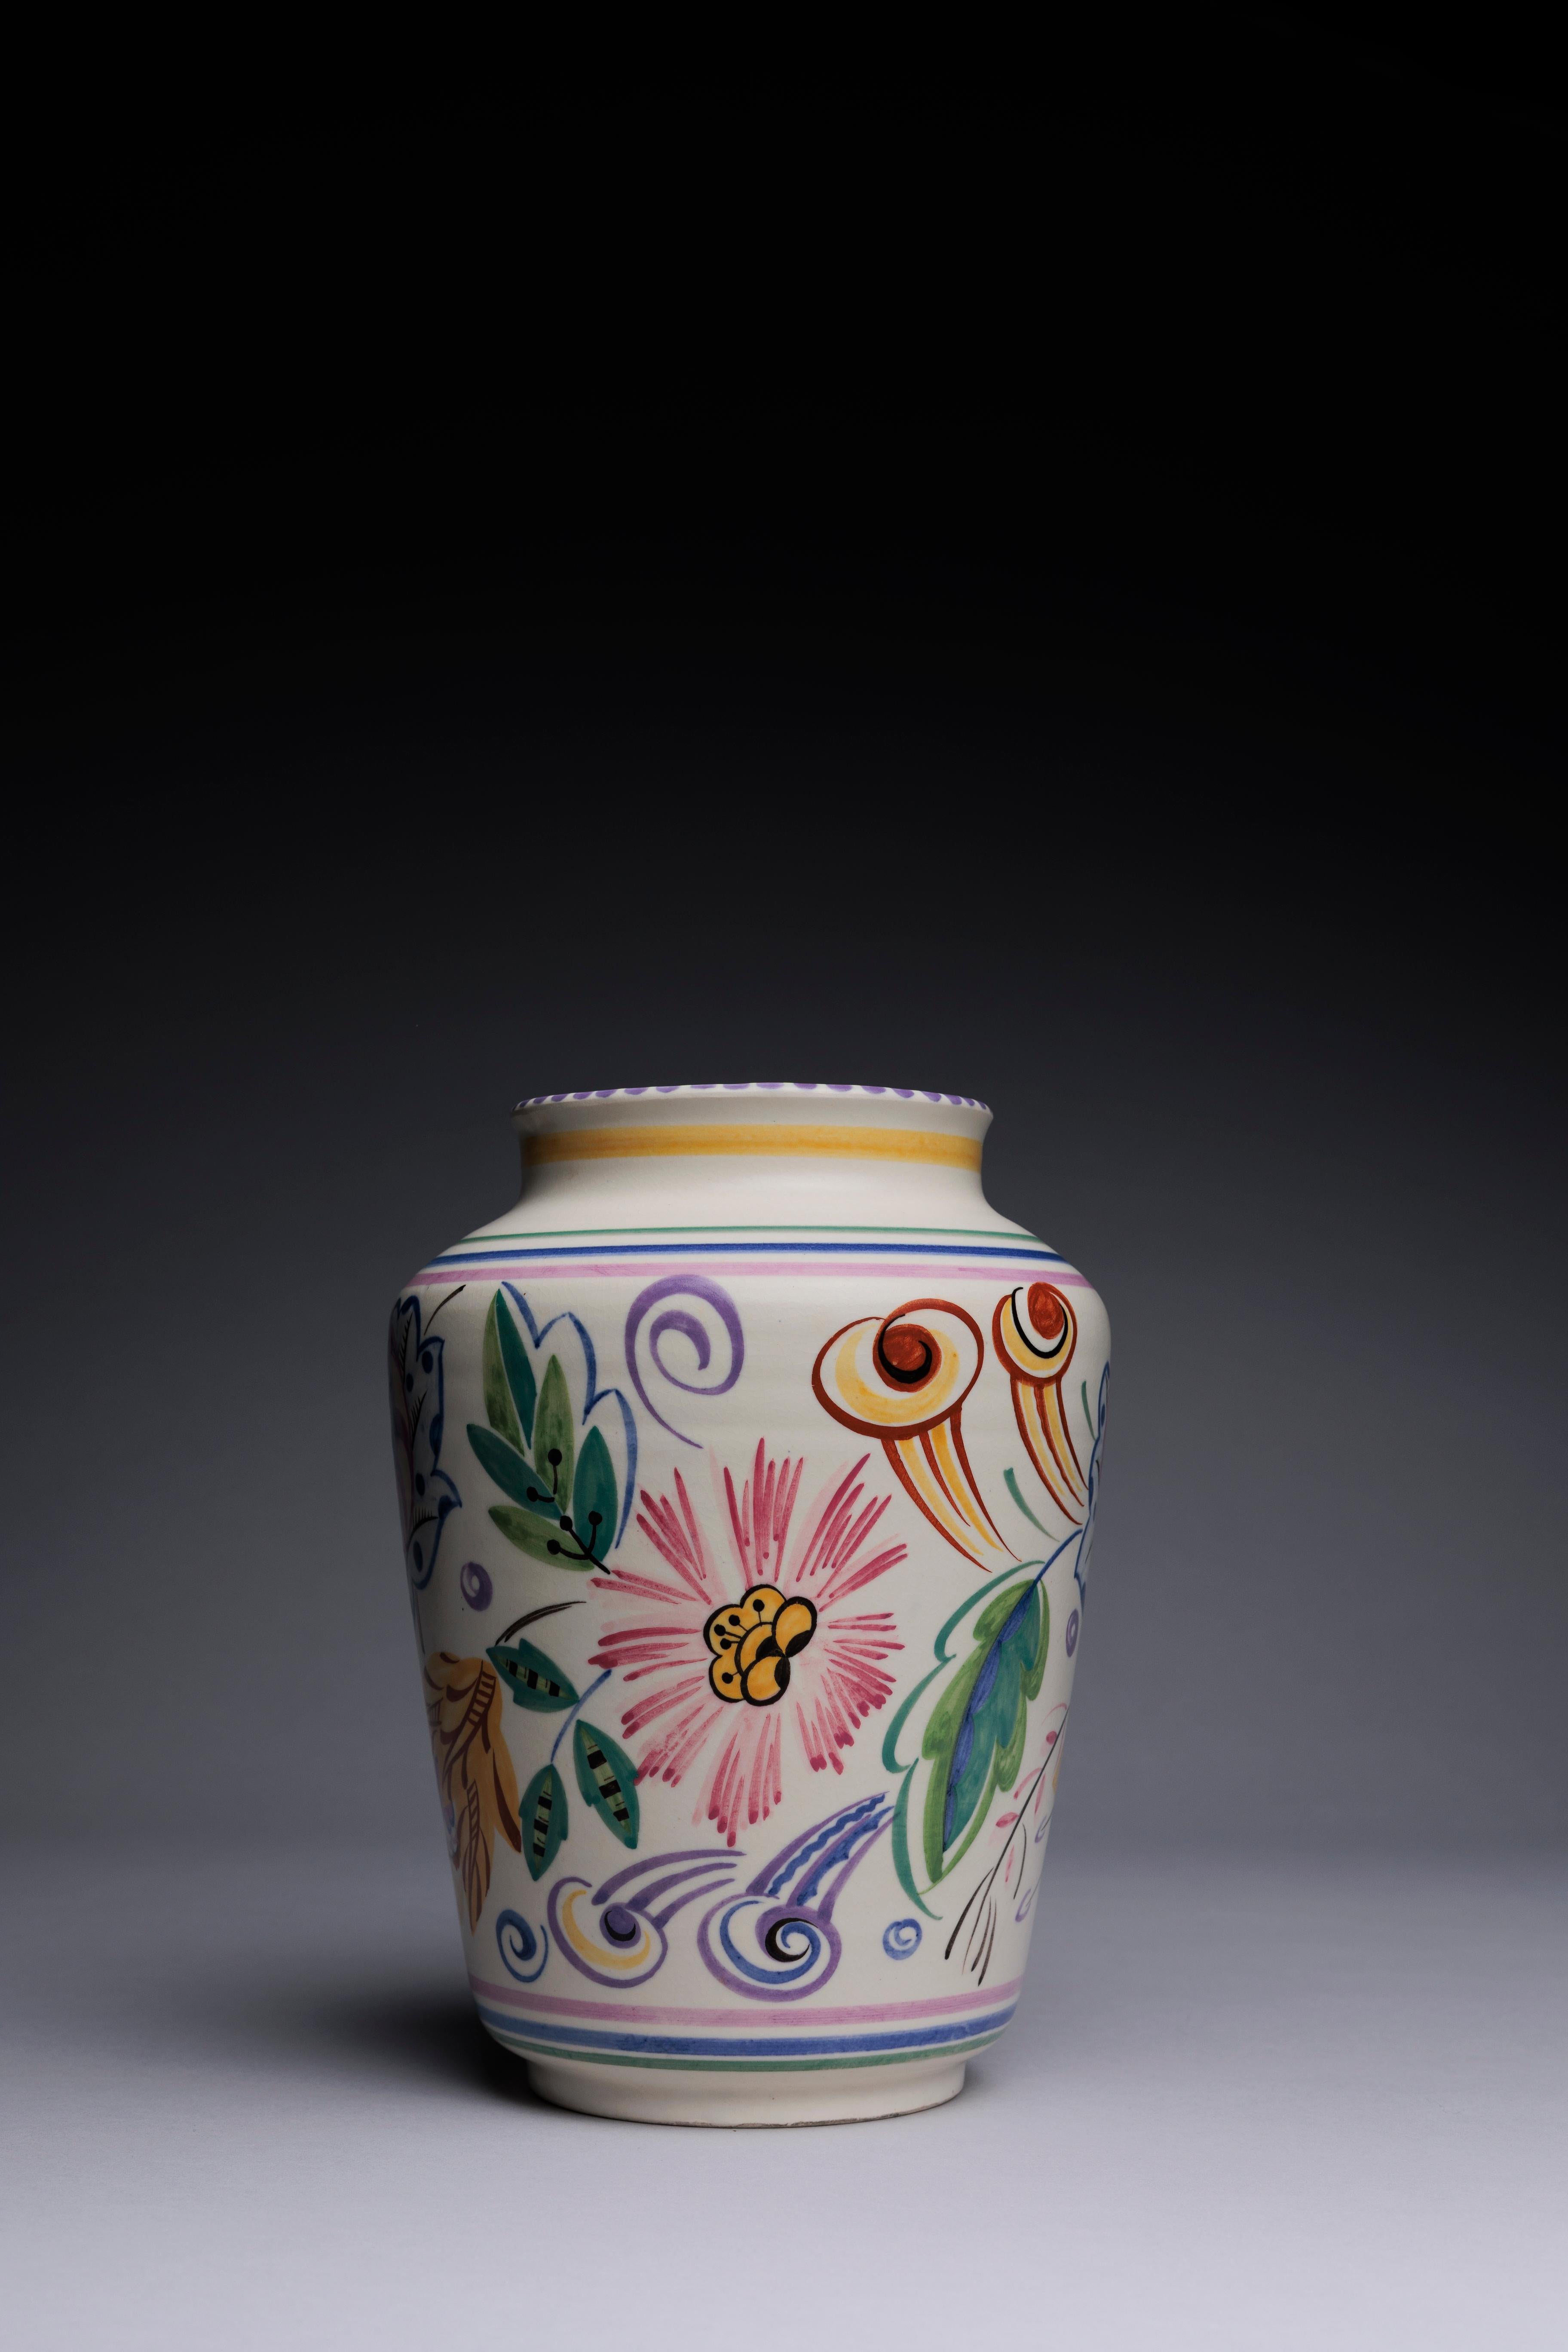 Das Design dieser Vase von Poole Pottery stammt von einer relativ wenig untersuchten Figur in der Geschichte des Keramikdesigns: Truda Carter. Als leitender Designer des Unternehmens war Carter fast 30 Jahre lang für die Entwicklung der Ästhetik von